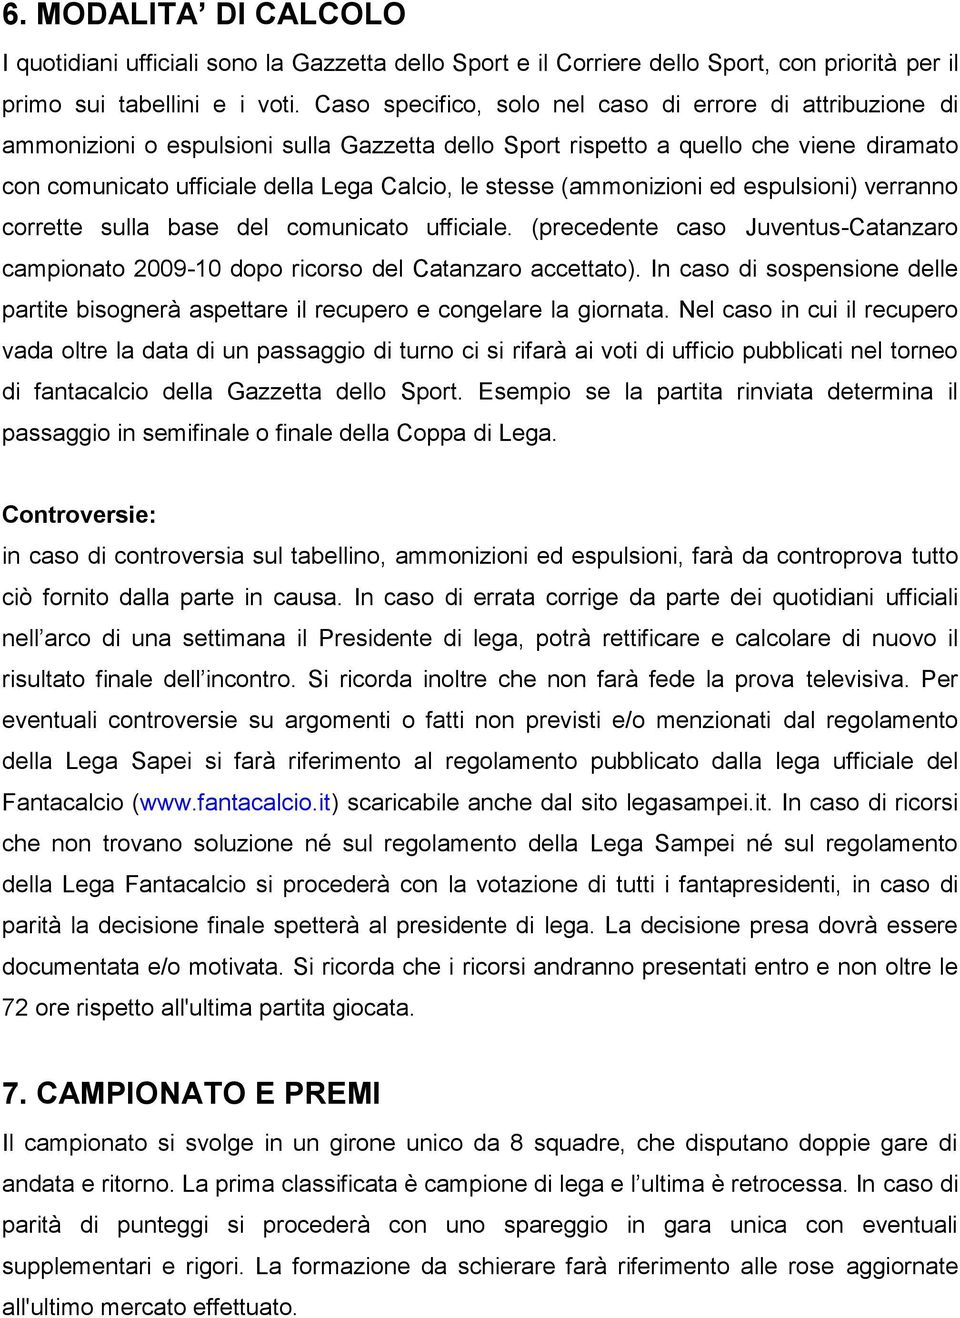 stesse (ammonizioni ed espulsioni) verranno corrette sulla base del comunicato ufficiale. (precedente caso Juventus-Catanzaro campionato 2009-10 dopo ricorso del Catanzaro accettato).